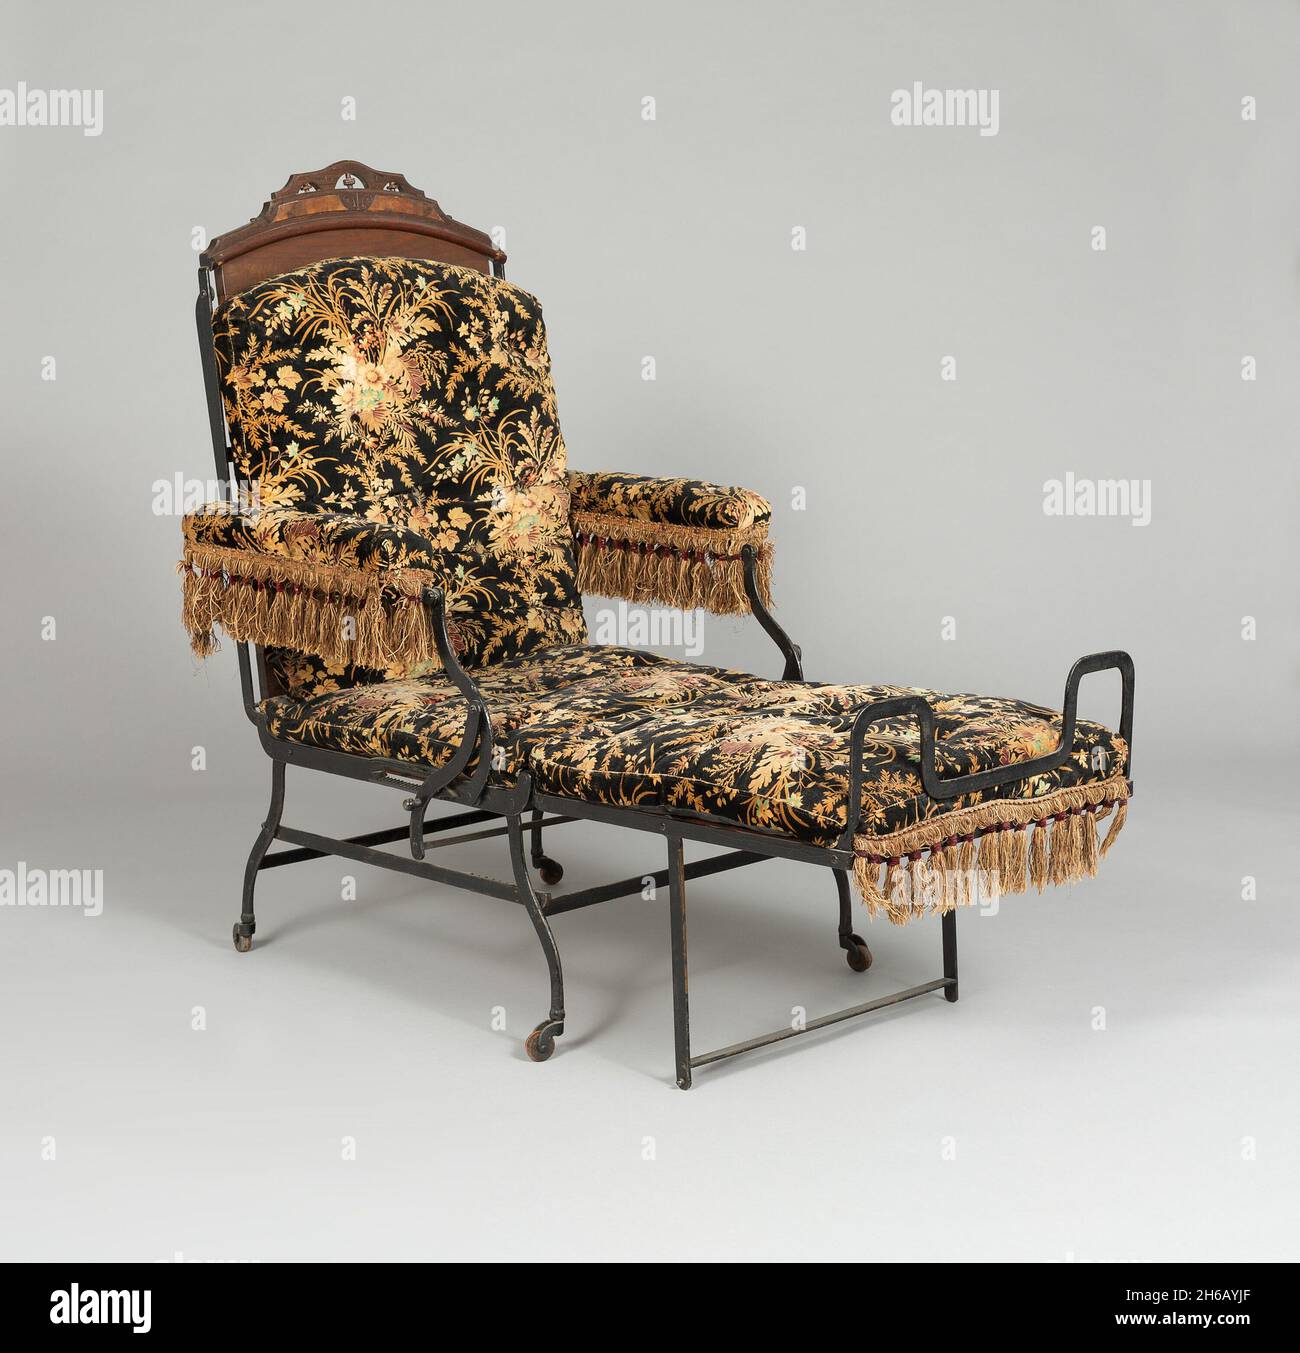 Presidente, 1876. Silla plegable con decoración de flecos, usada como silla  no válida, silla para fumadores o cama Fotografía de stock - Alamy